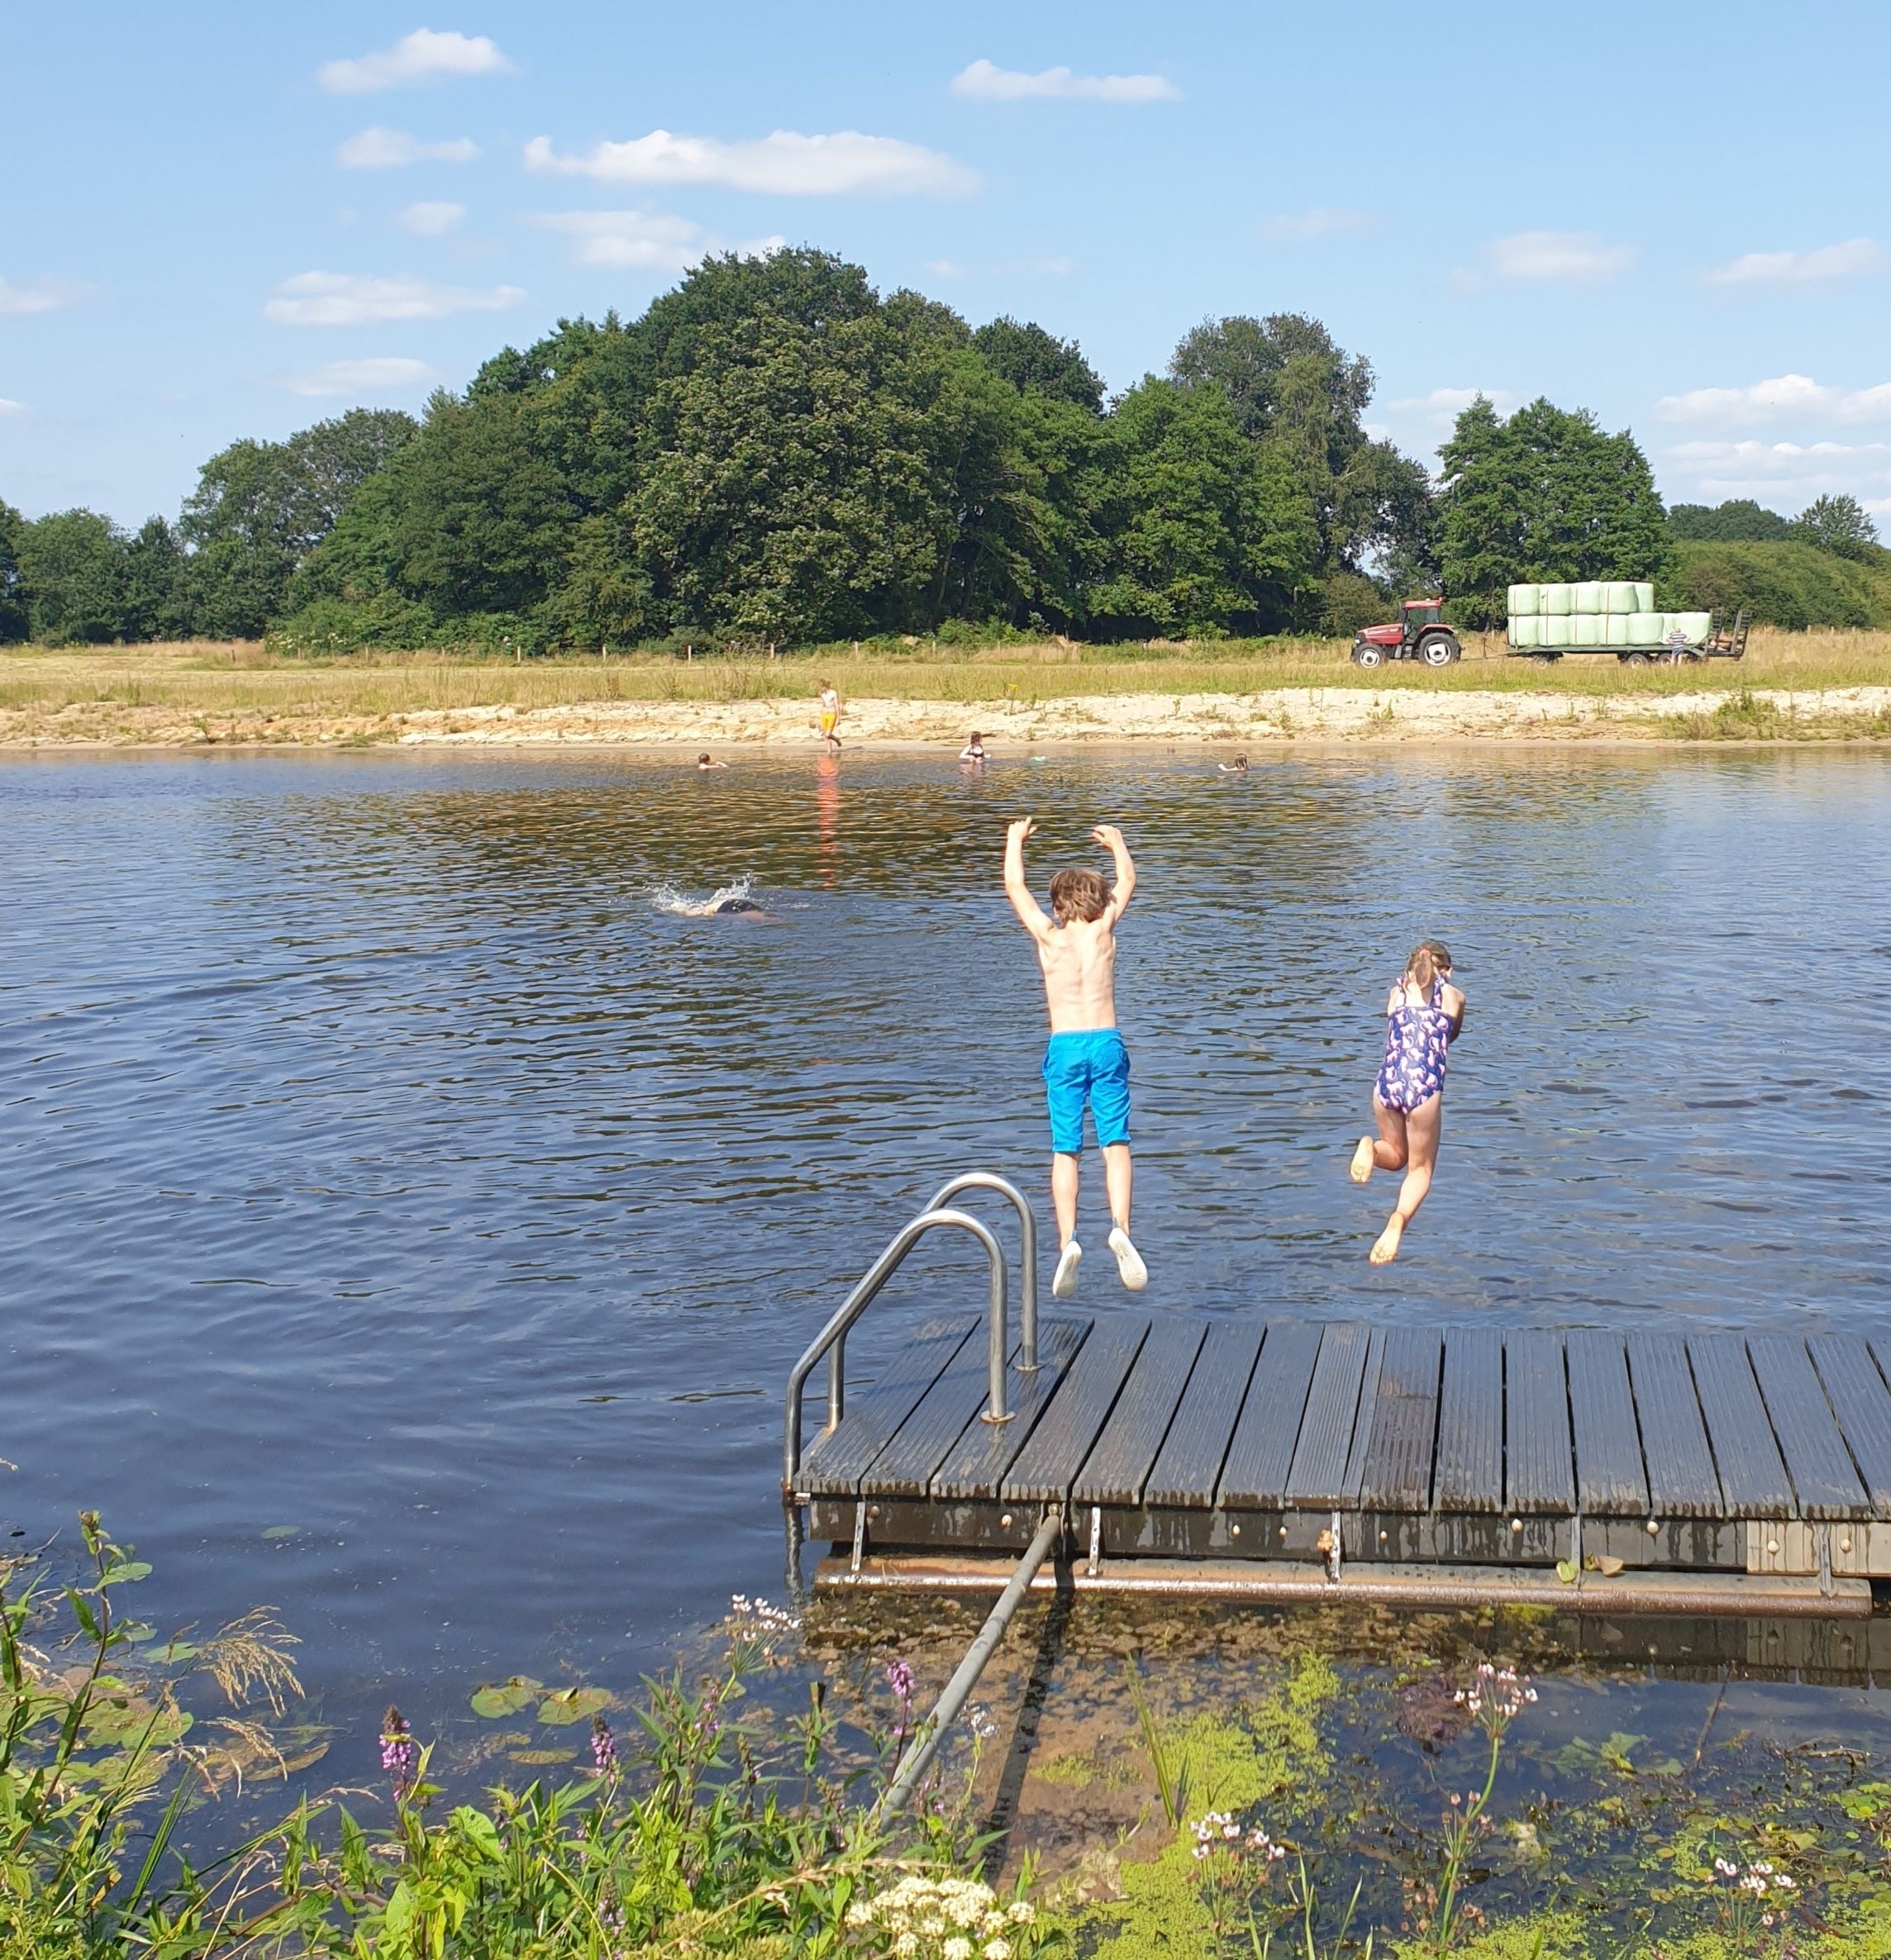 Huttopia de Roos: review van kindvriendelijke natuur camping in Overijssel . Camping Huttopia de Roos ligt aan de Vecht. Op de camping liggen er in de Vecht drie zwemsteigers. Daar wordt veel gebruik gemaakt door gezinnen met wat grotere kids, zoals die van ons. 